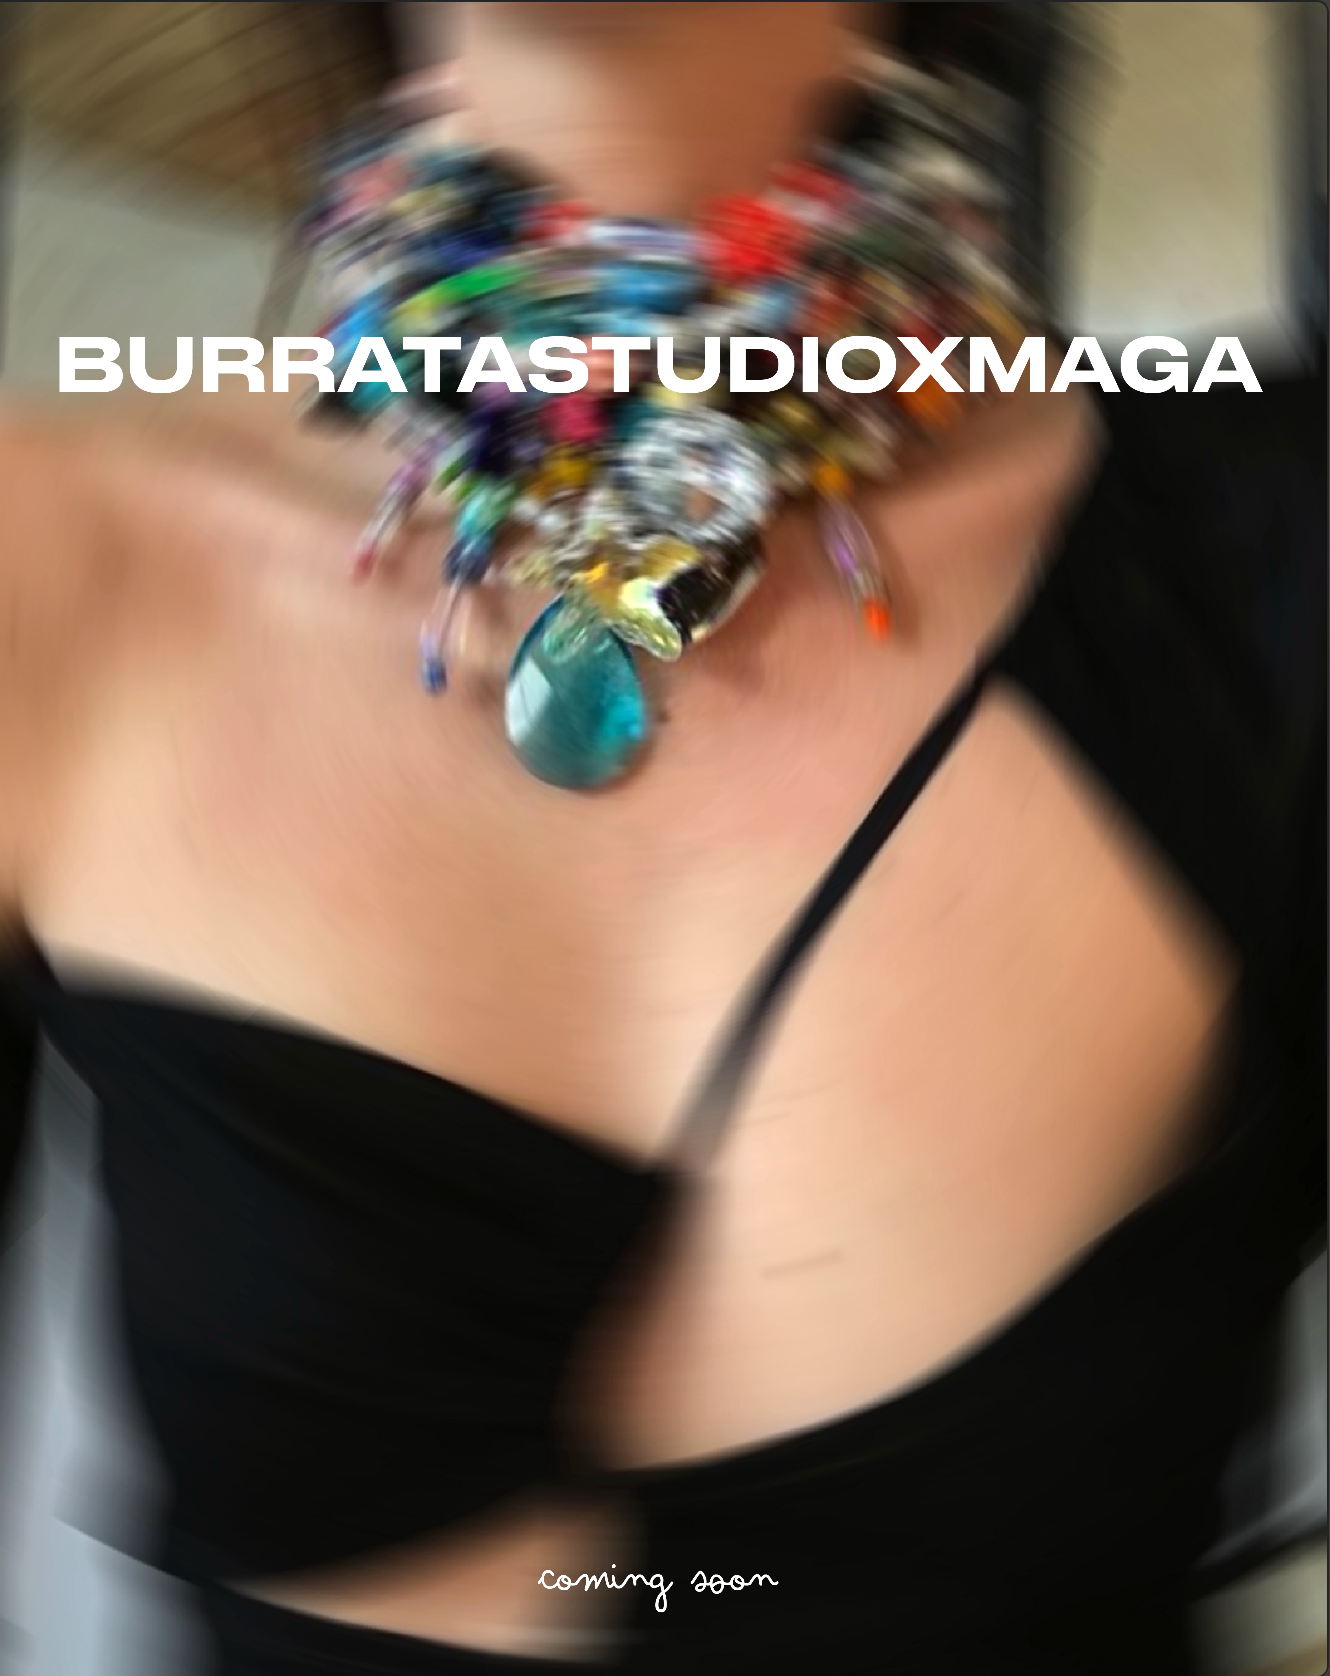 BURRATA STUDIO